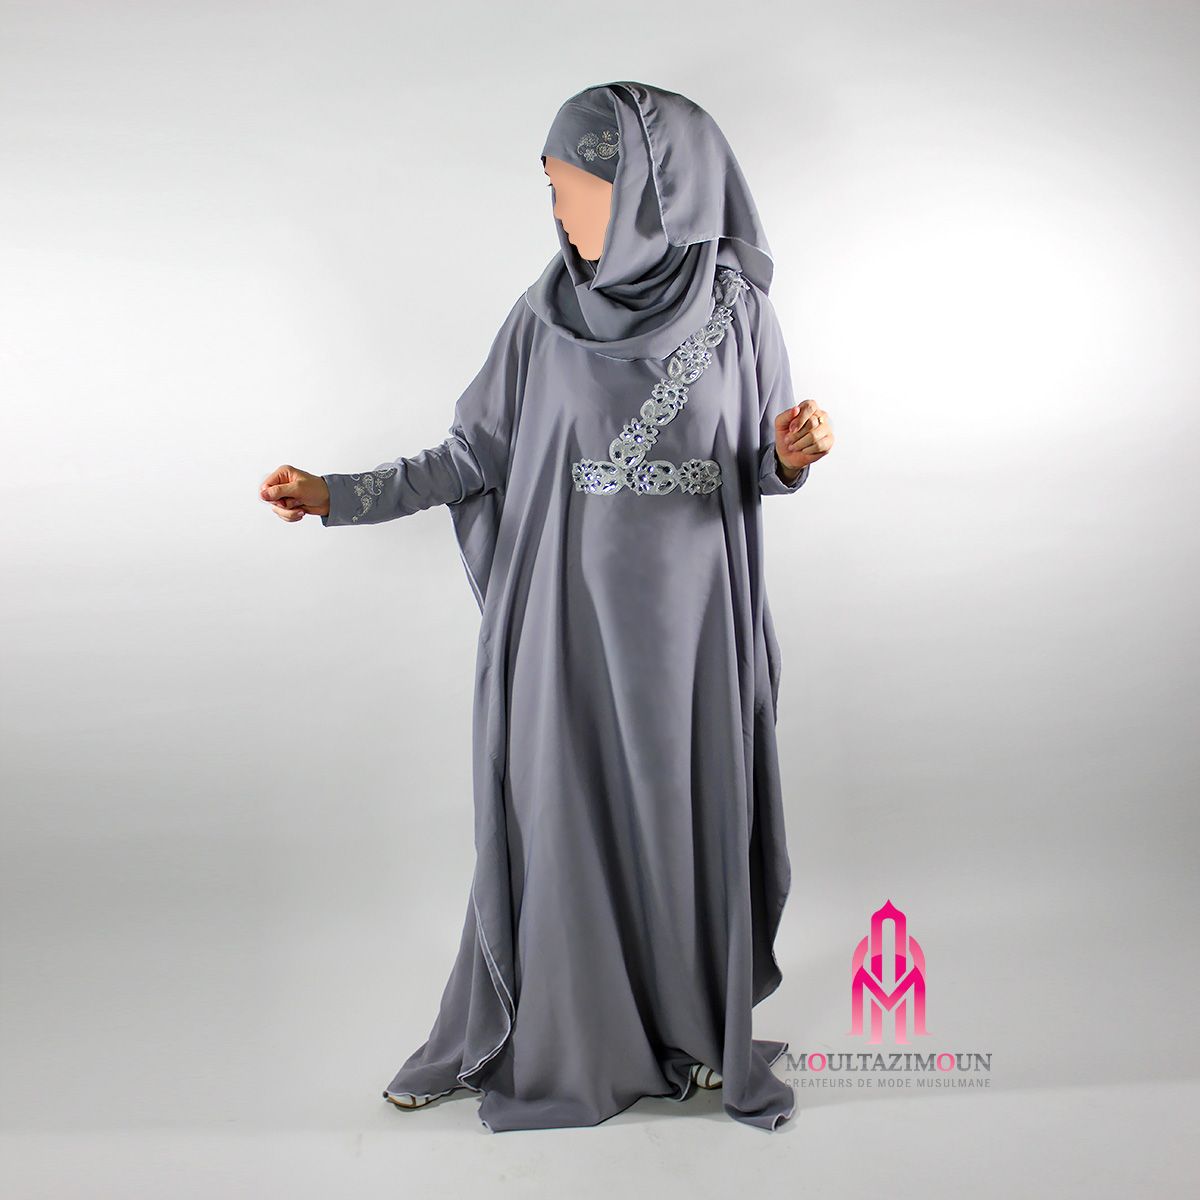 La abaya : à chacun son style